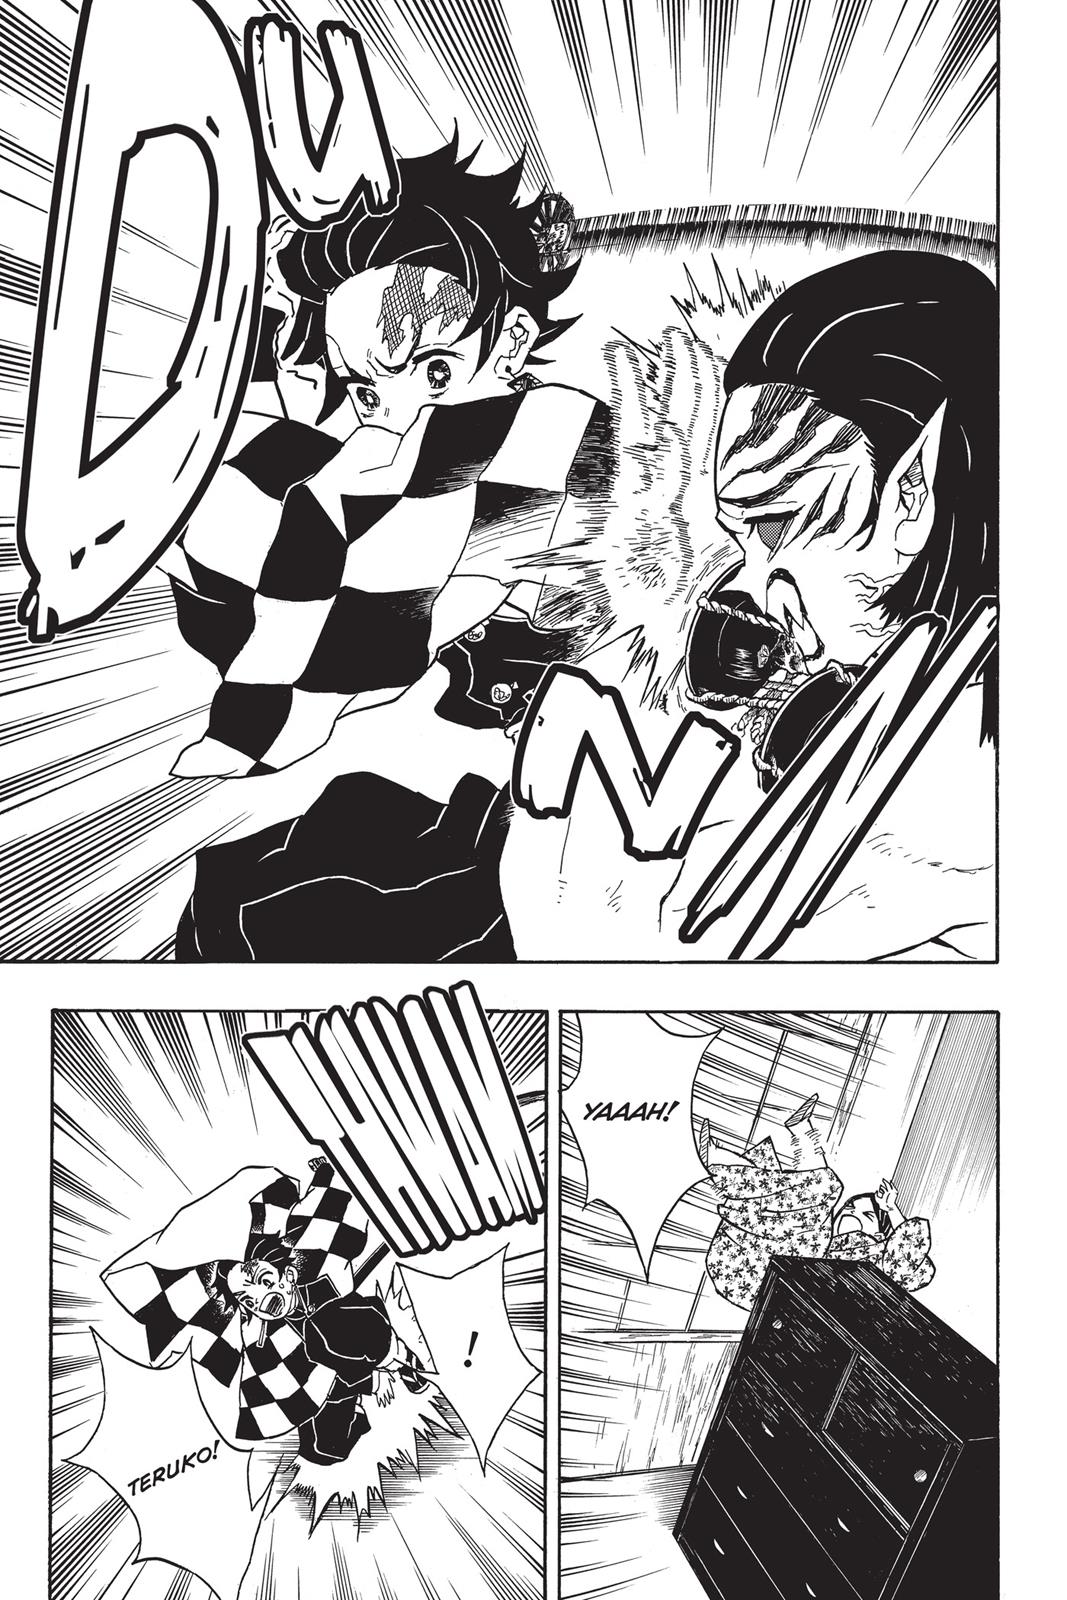 Demon Slayer Manga Manga Chapter - 21 - image 8